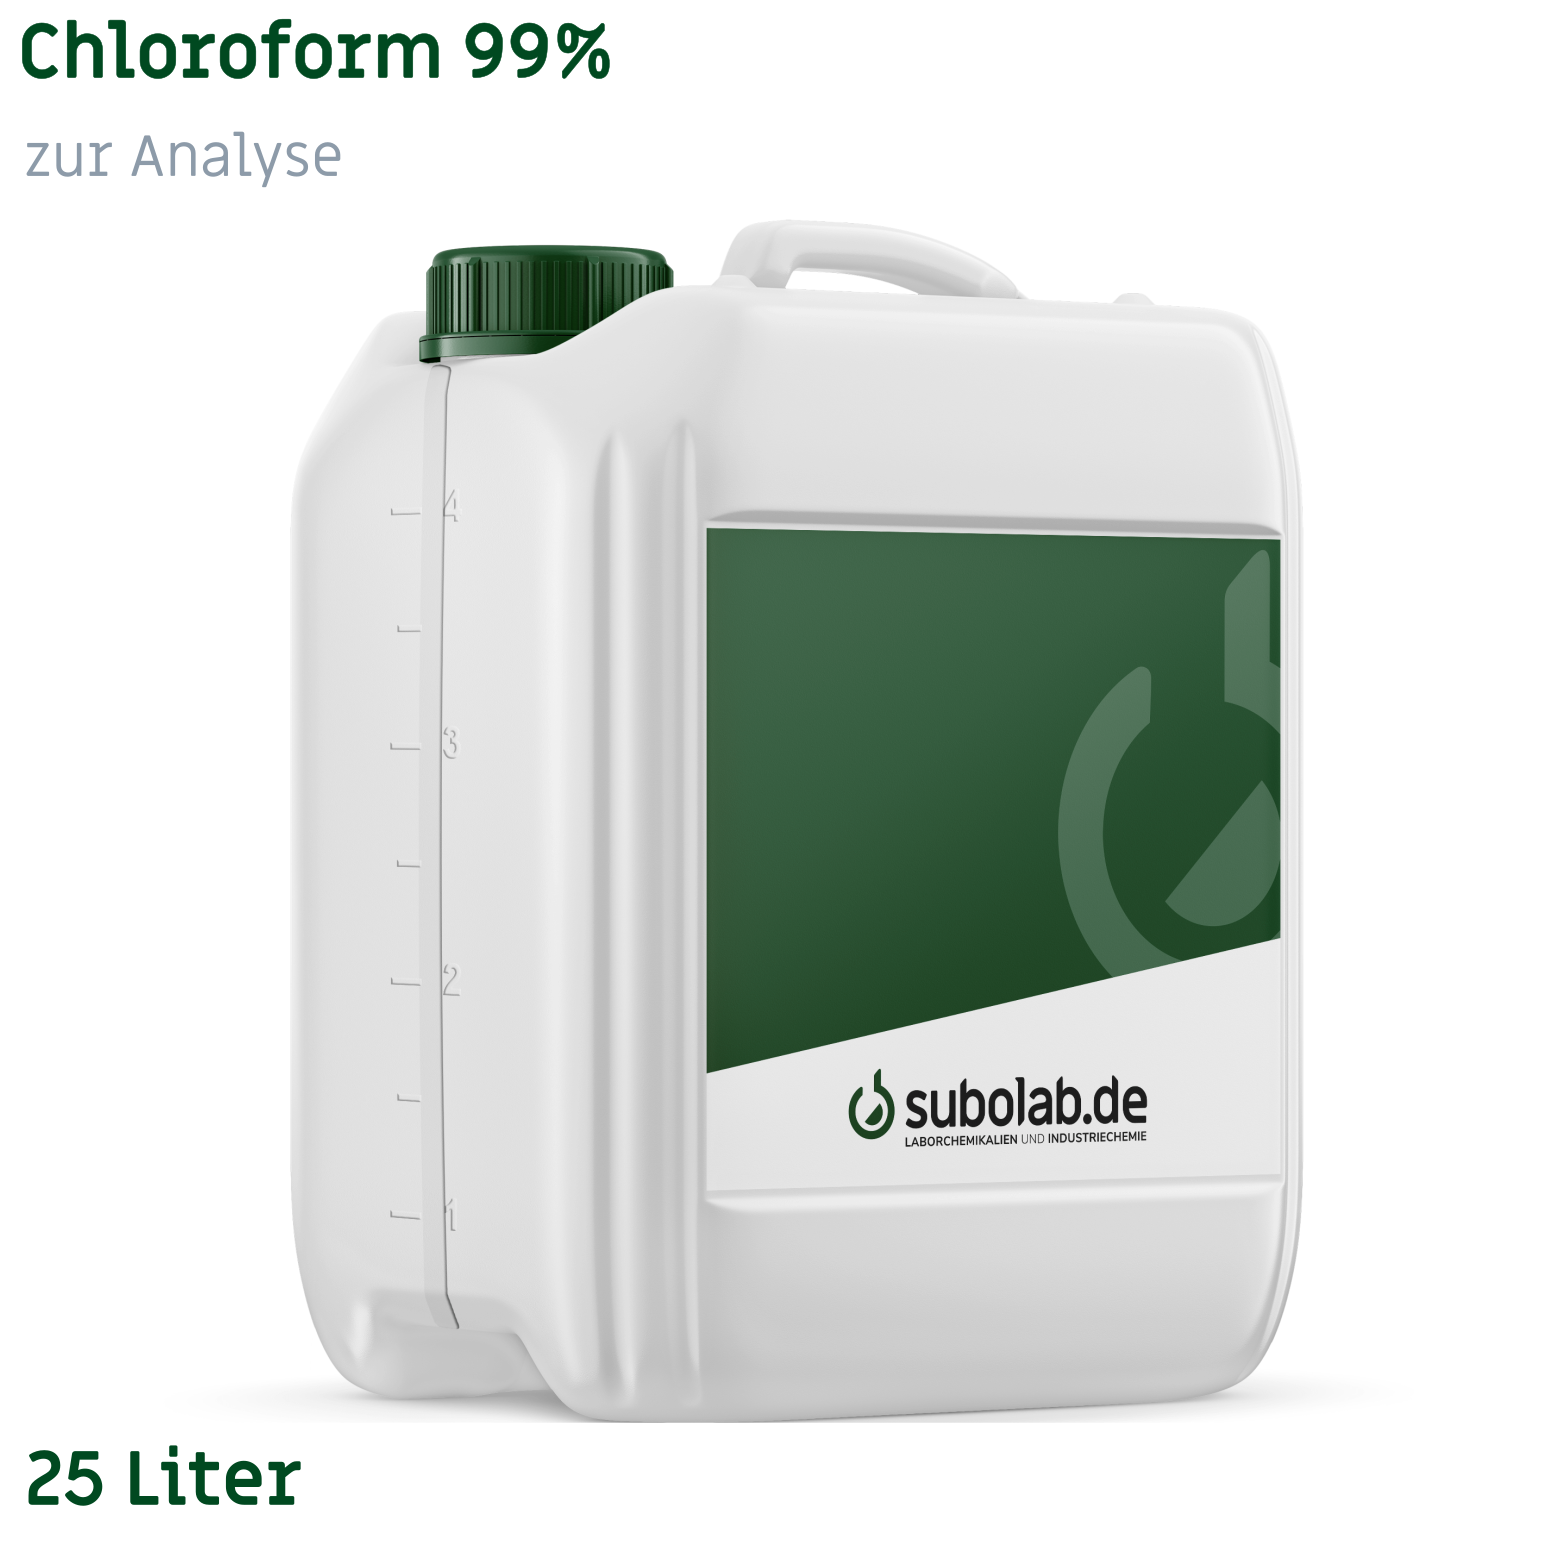 Bild von Chloroform 99% zur Analyse (25 Liter)